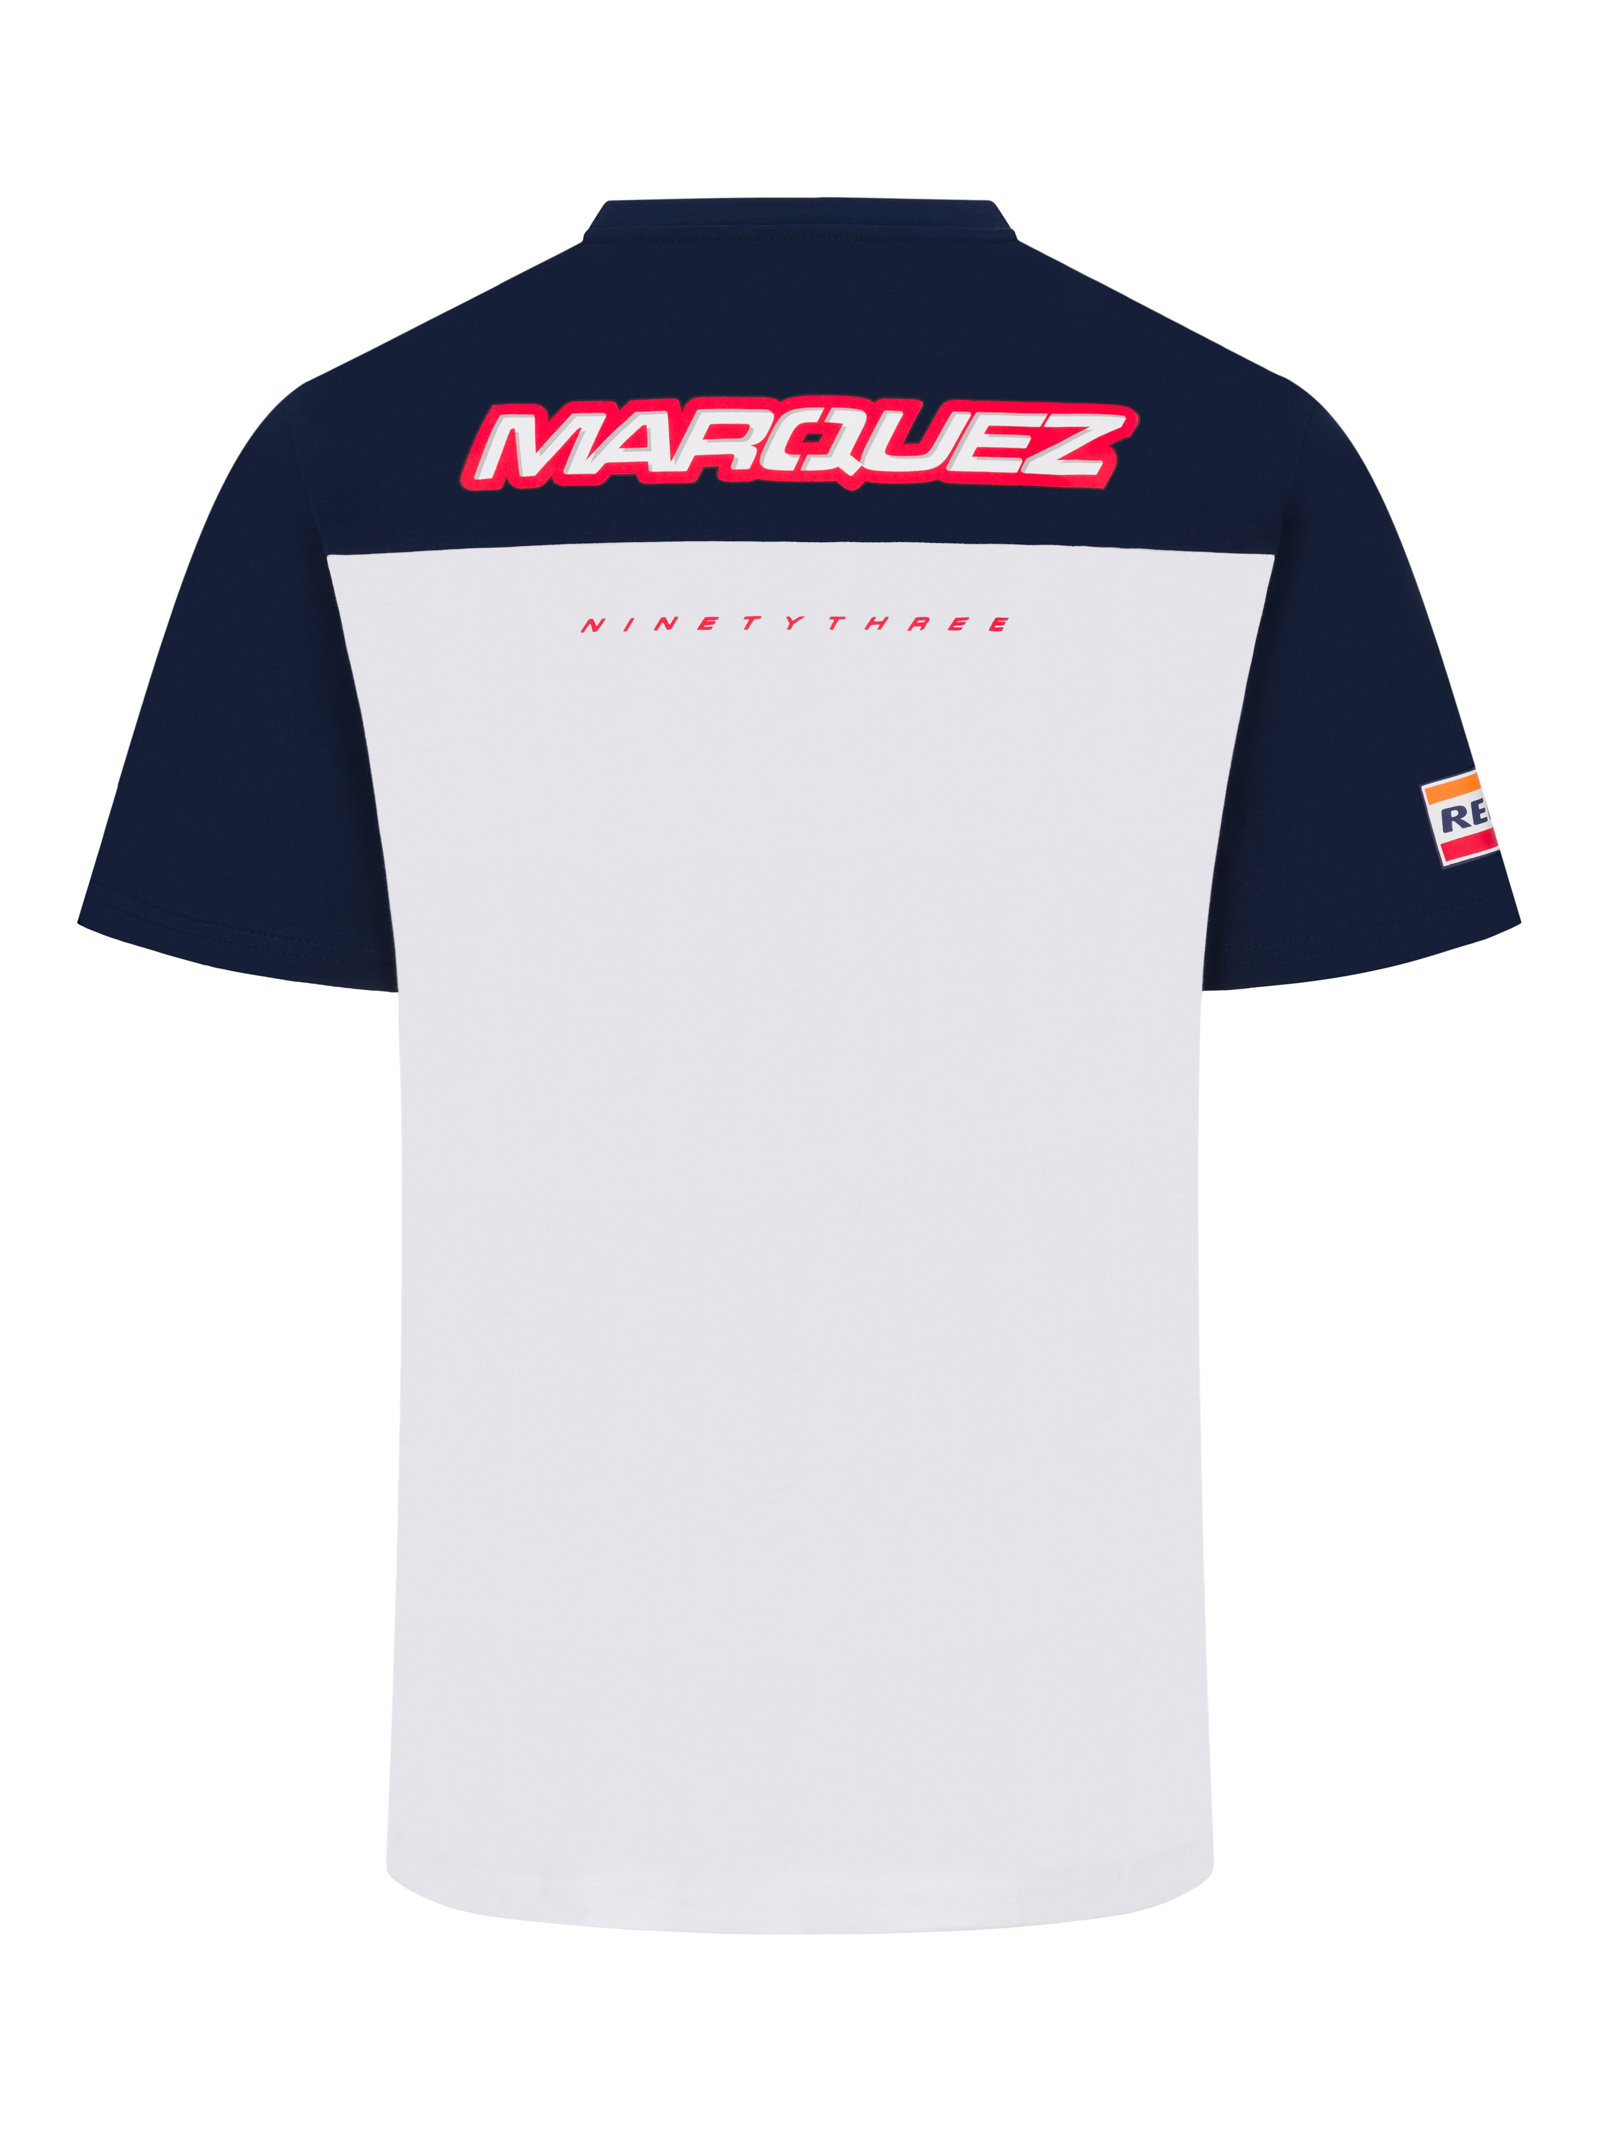 T-shirt Men Dual Marc Marquez Honda HRC - 93 and Honda logo